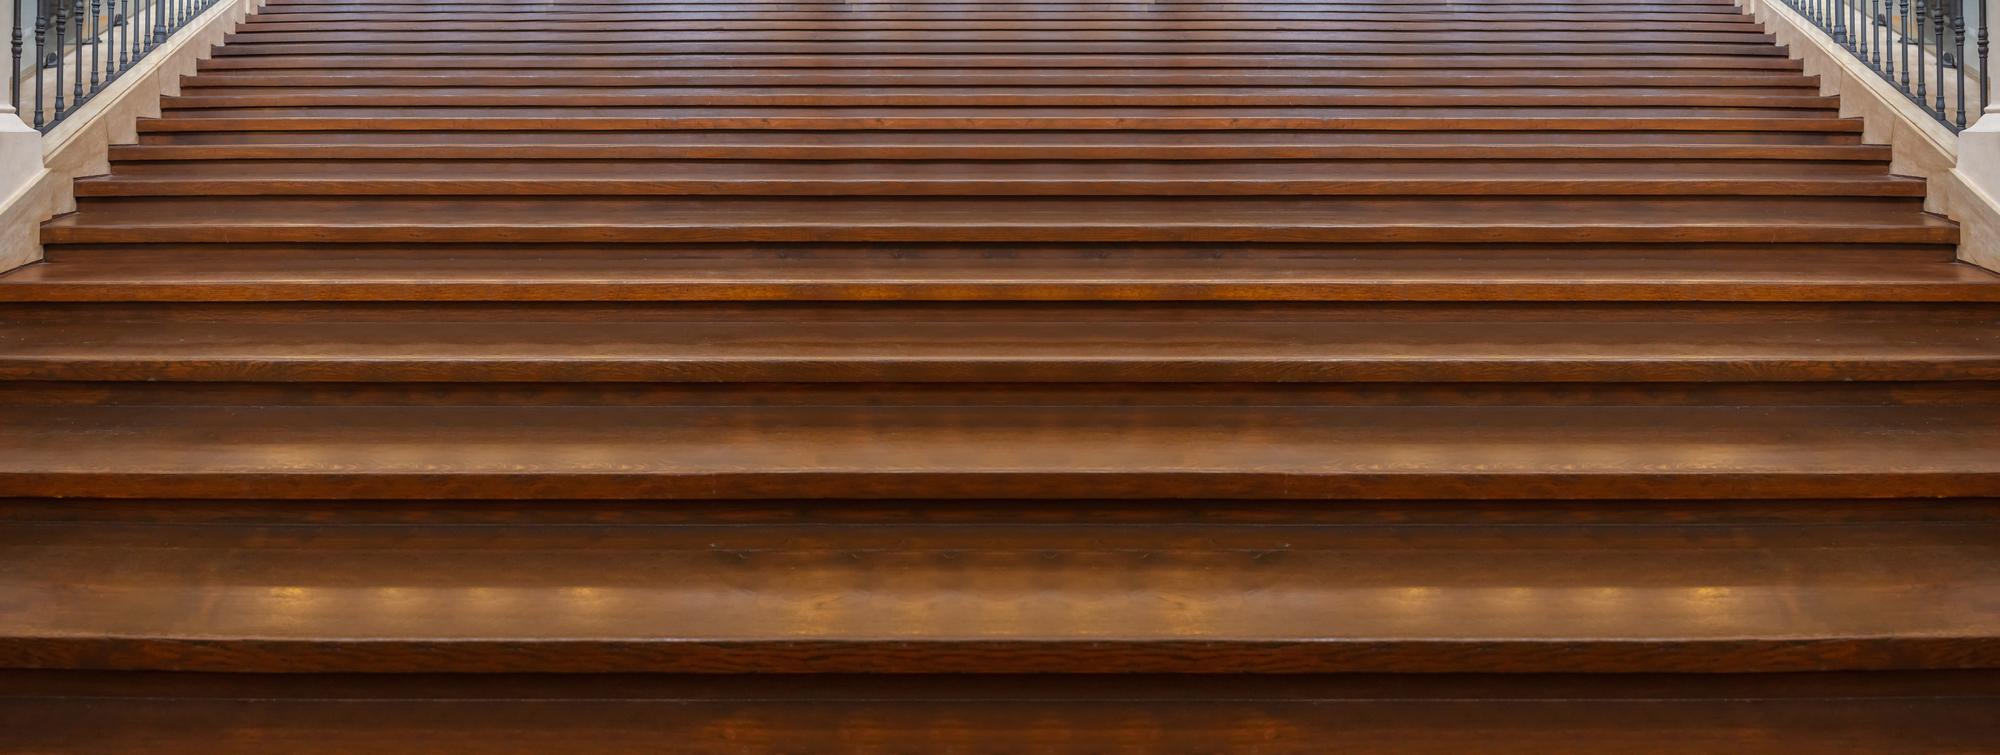 listwa-do-paneli-na-schody-element-ktory-odmieni-wnetrze